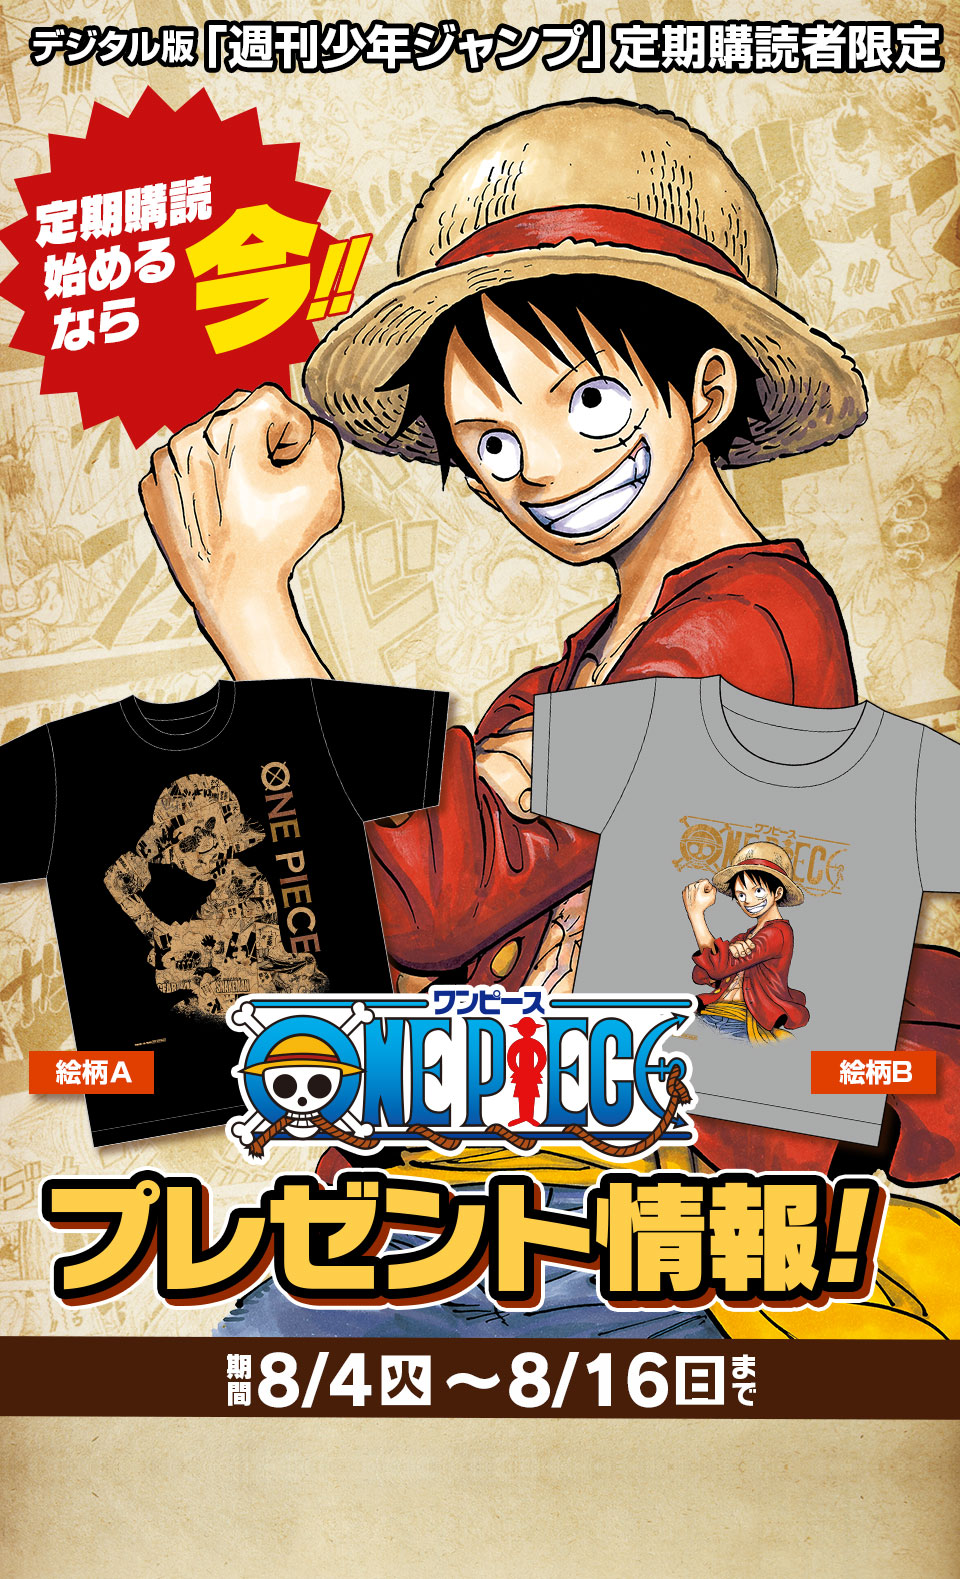 デジタル版 週刊少年ジャンプ 定期購読者限定 One Piece スペシャルコンビtシャツを 2枚1組で100名様にプレゼント